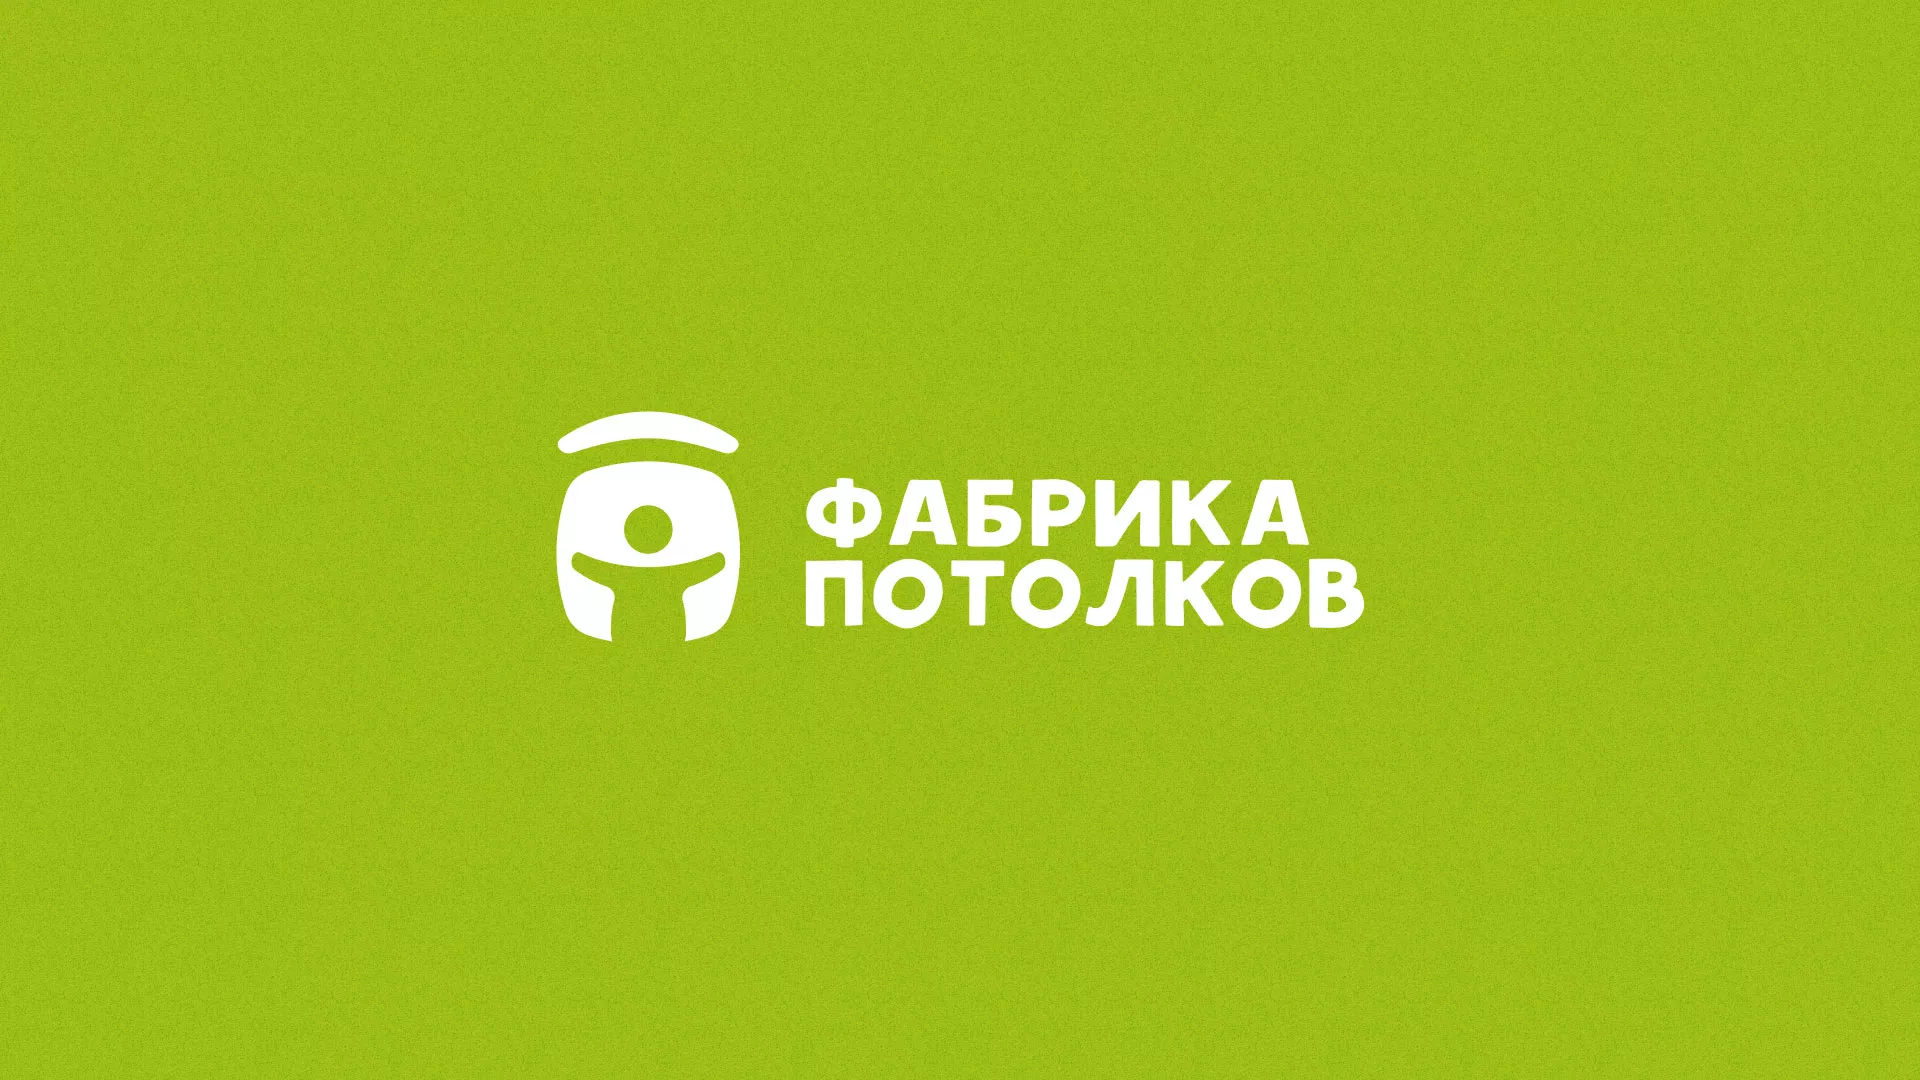 Разработка логотипа для производства натяжных потолков в Азове